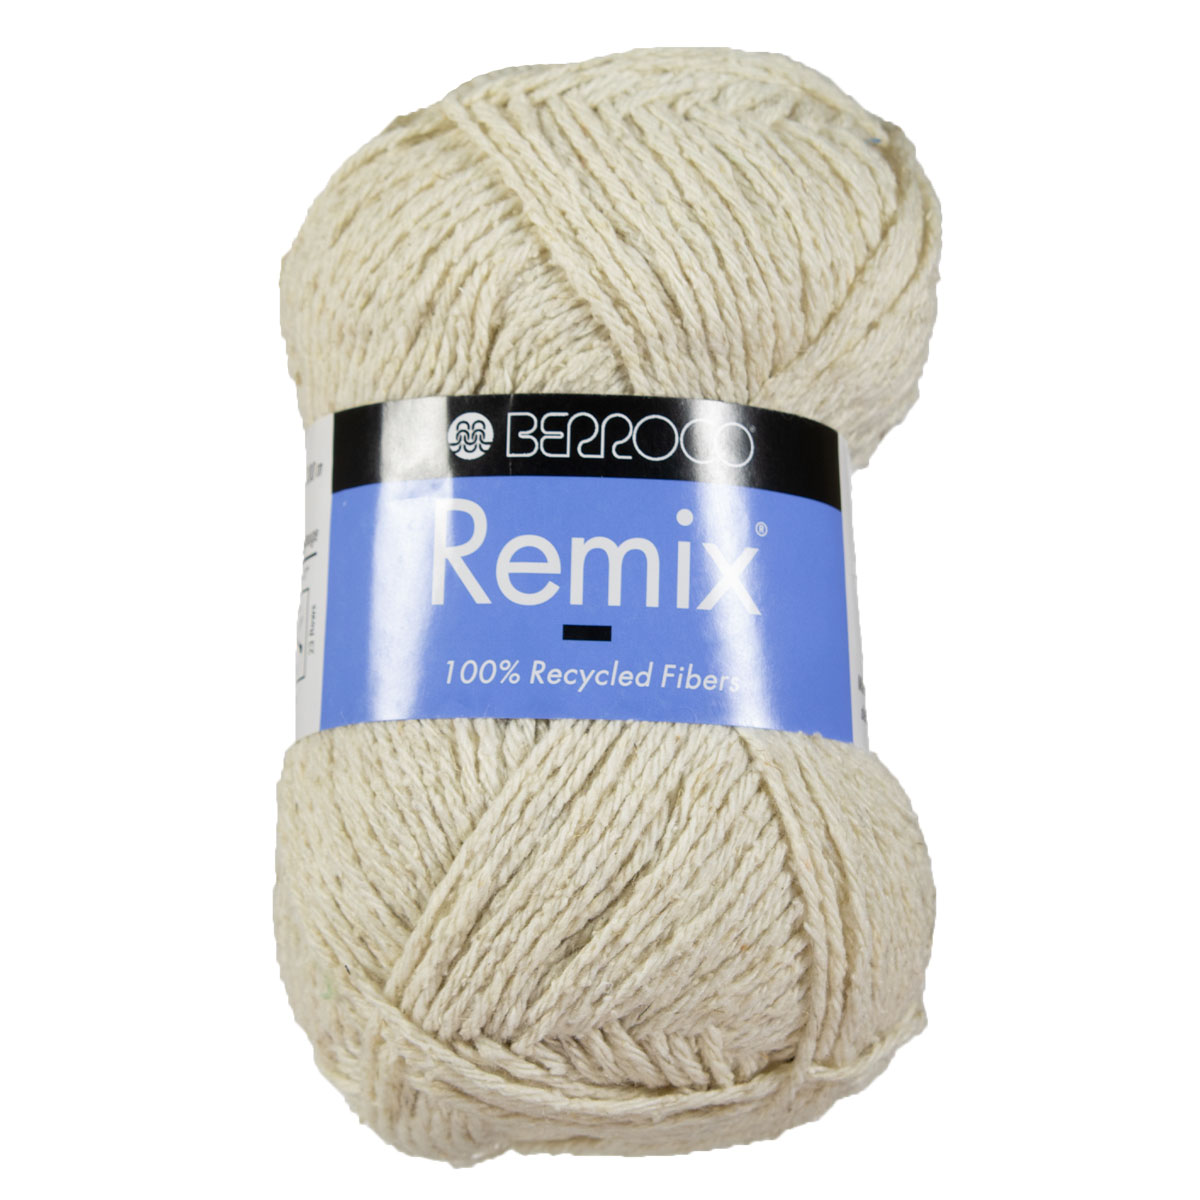 Berroco Remix Yarn at Jimmy Beans Wool